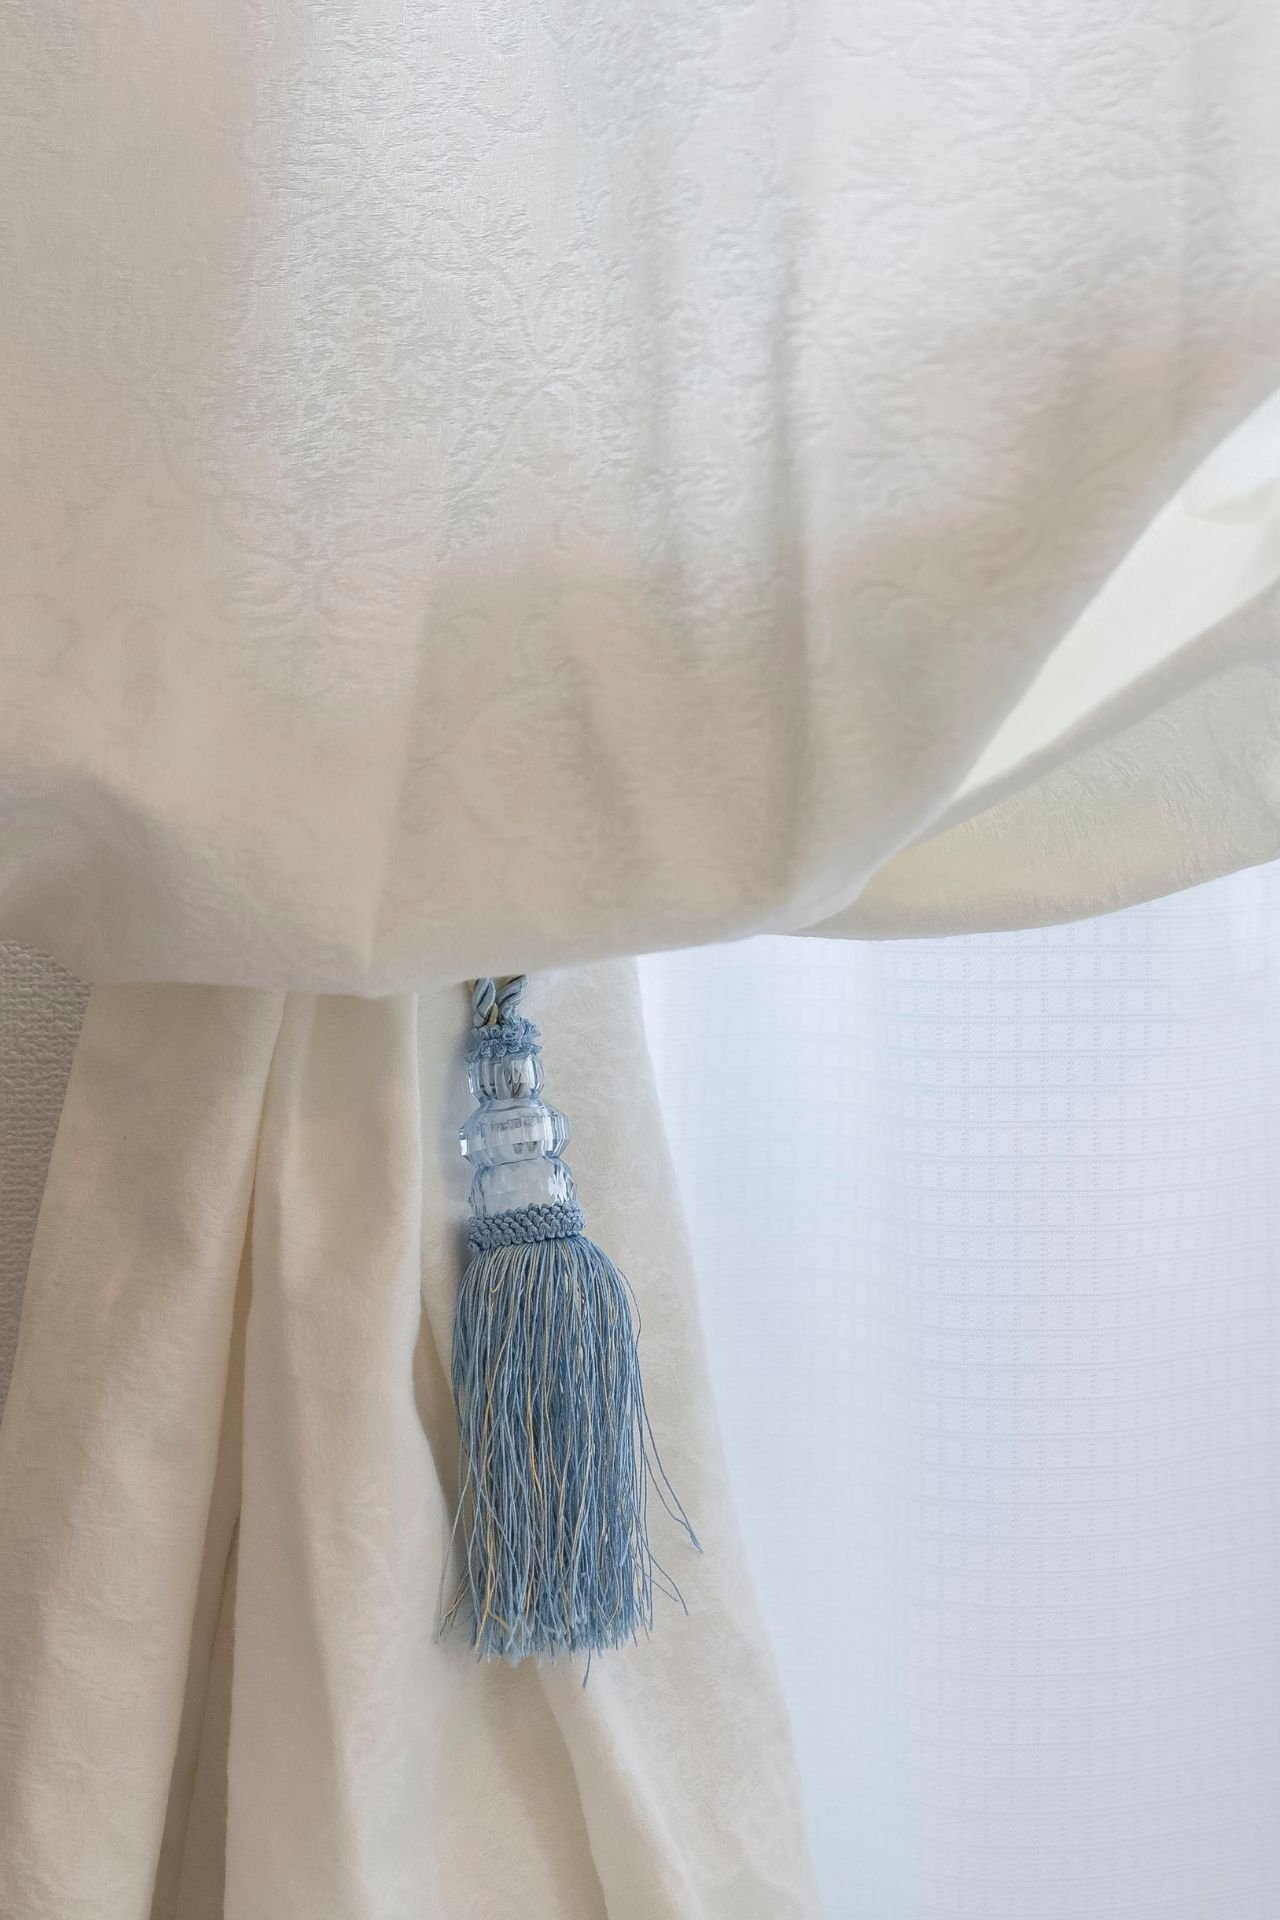 Cotton Curtains in Dubai 3